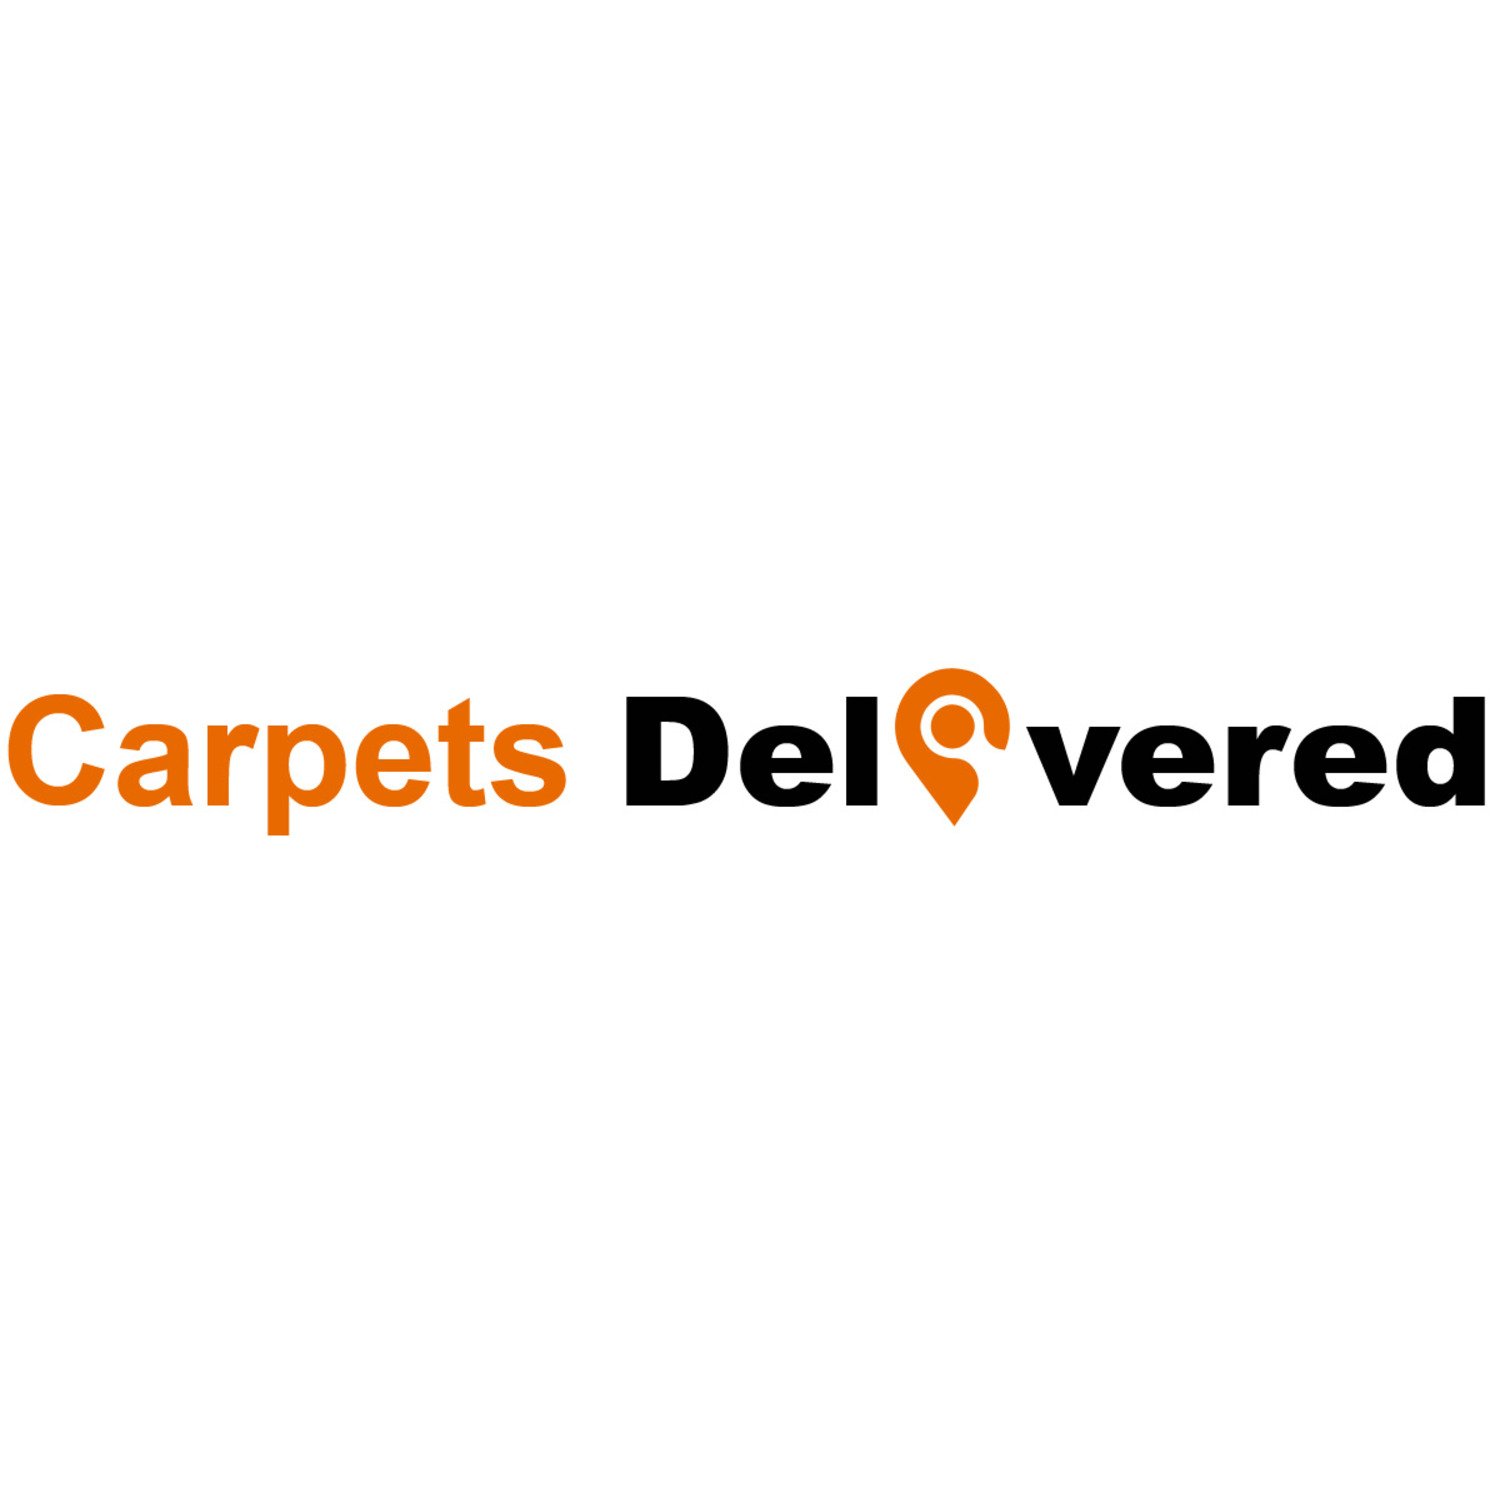 Carpets Delivered cover